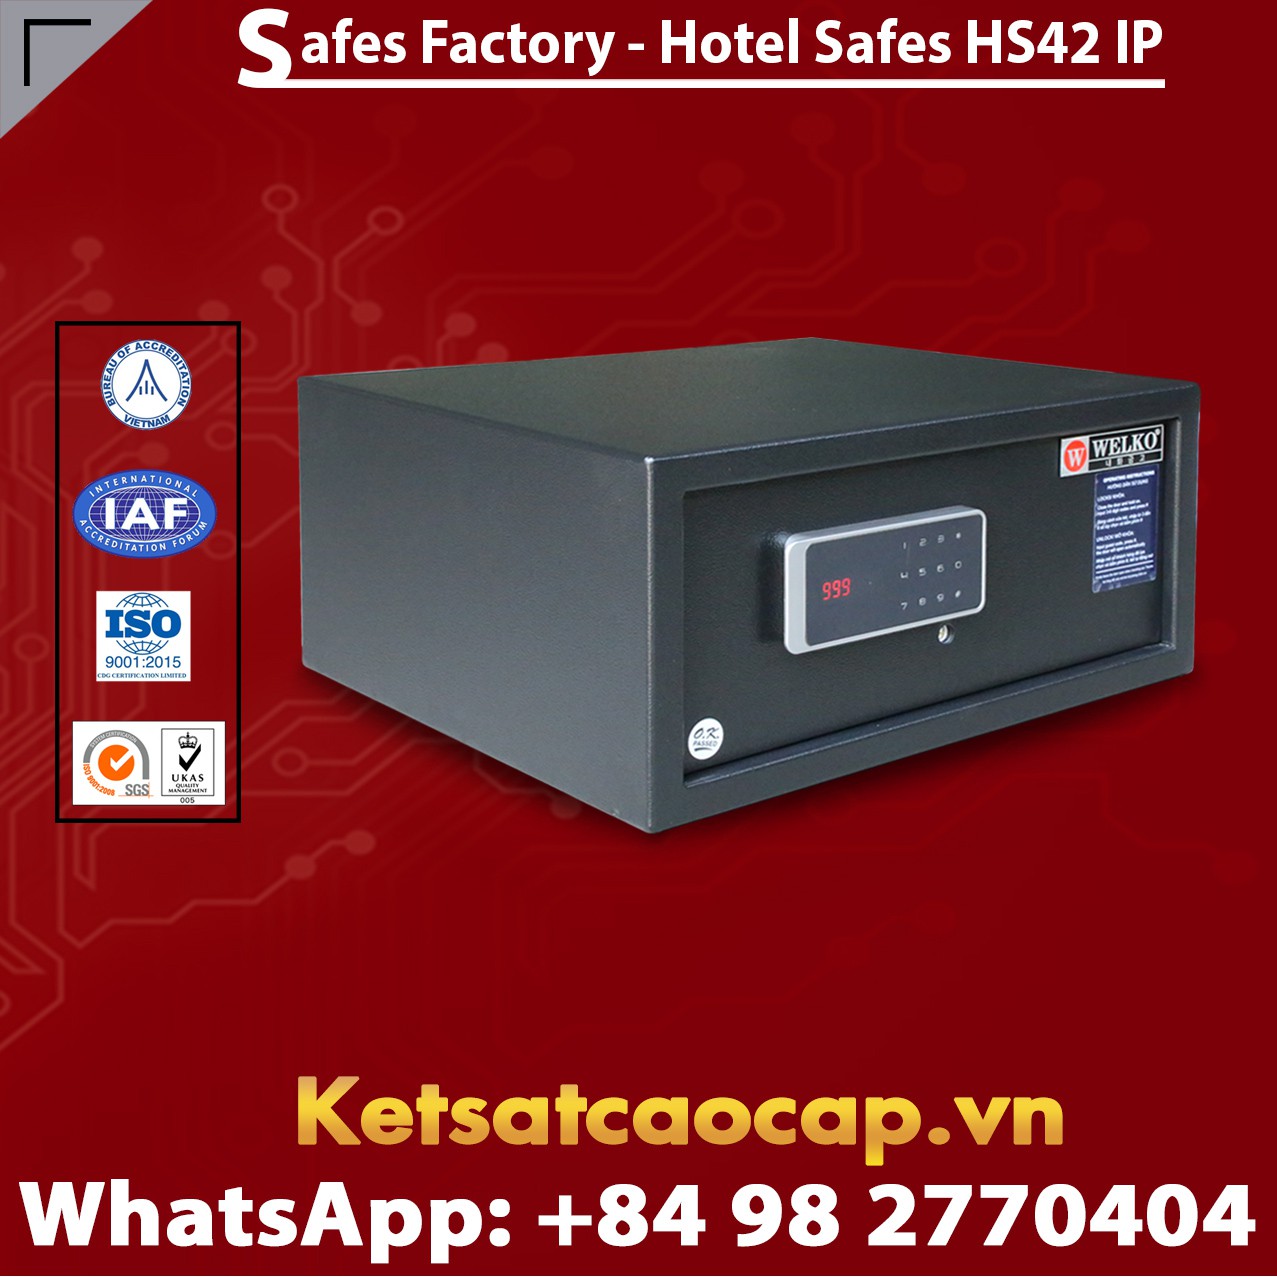 Safe in Hotel WELKO HS42 IP